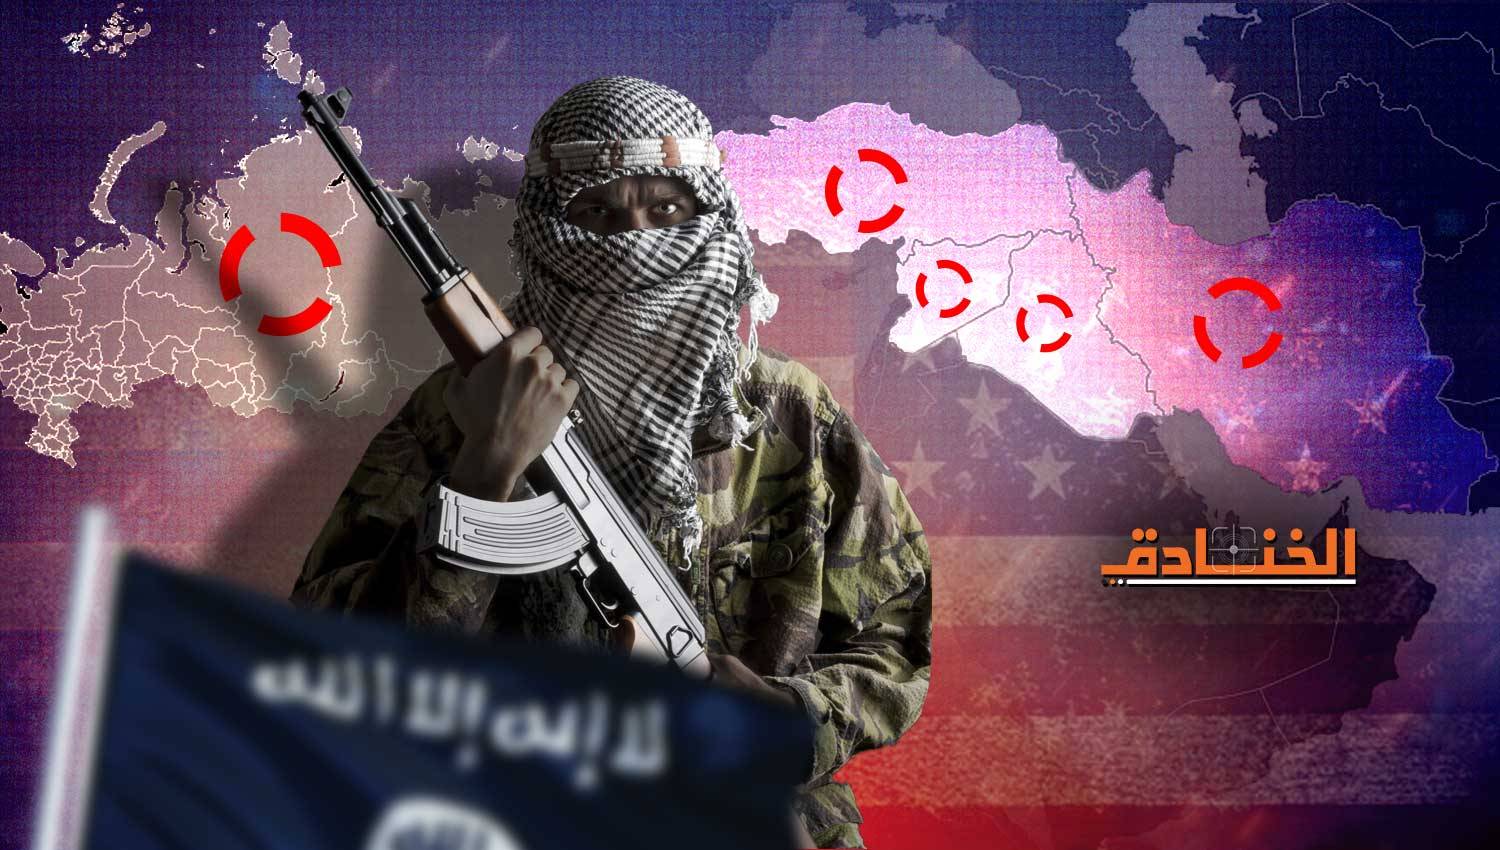 المصلحة الأمريكية الإسرائيلية حالياً: تفعيل عمليات داعش